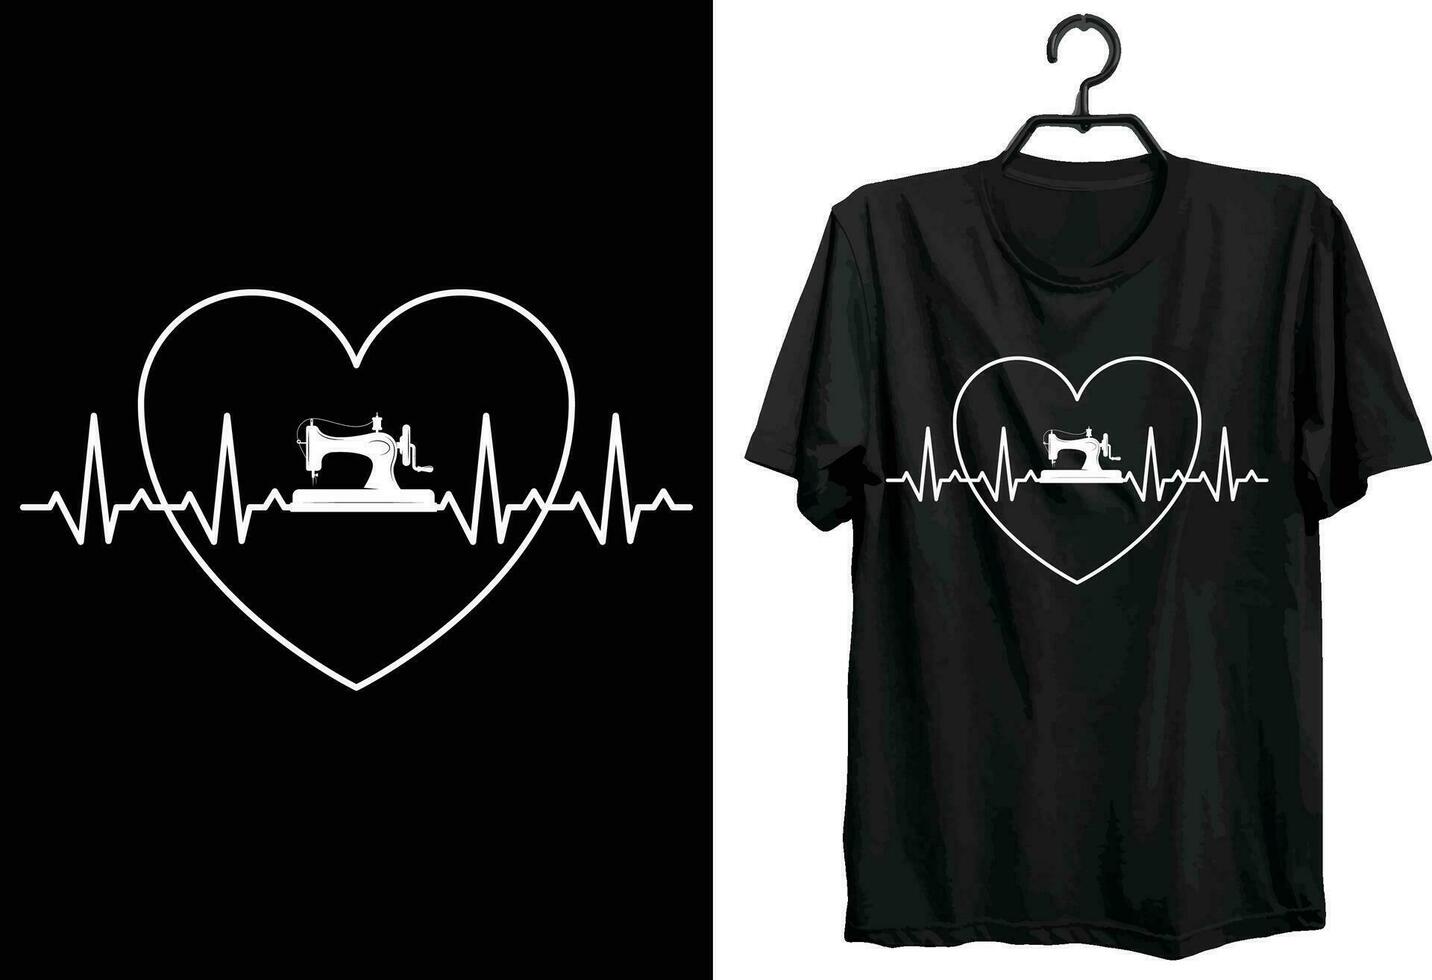 sömnad t-shirt design. rolig gåva Artikel sömnad t-shirt design för Allt skräddare och sömnad älskare och människors. vektor